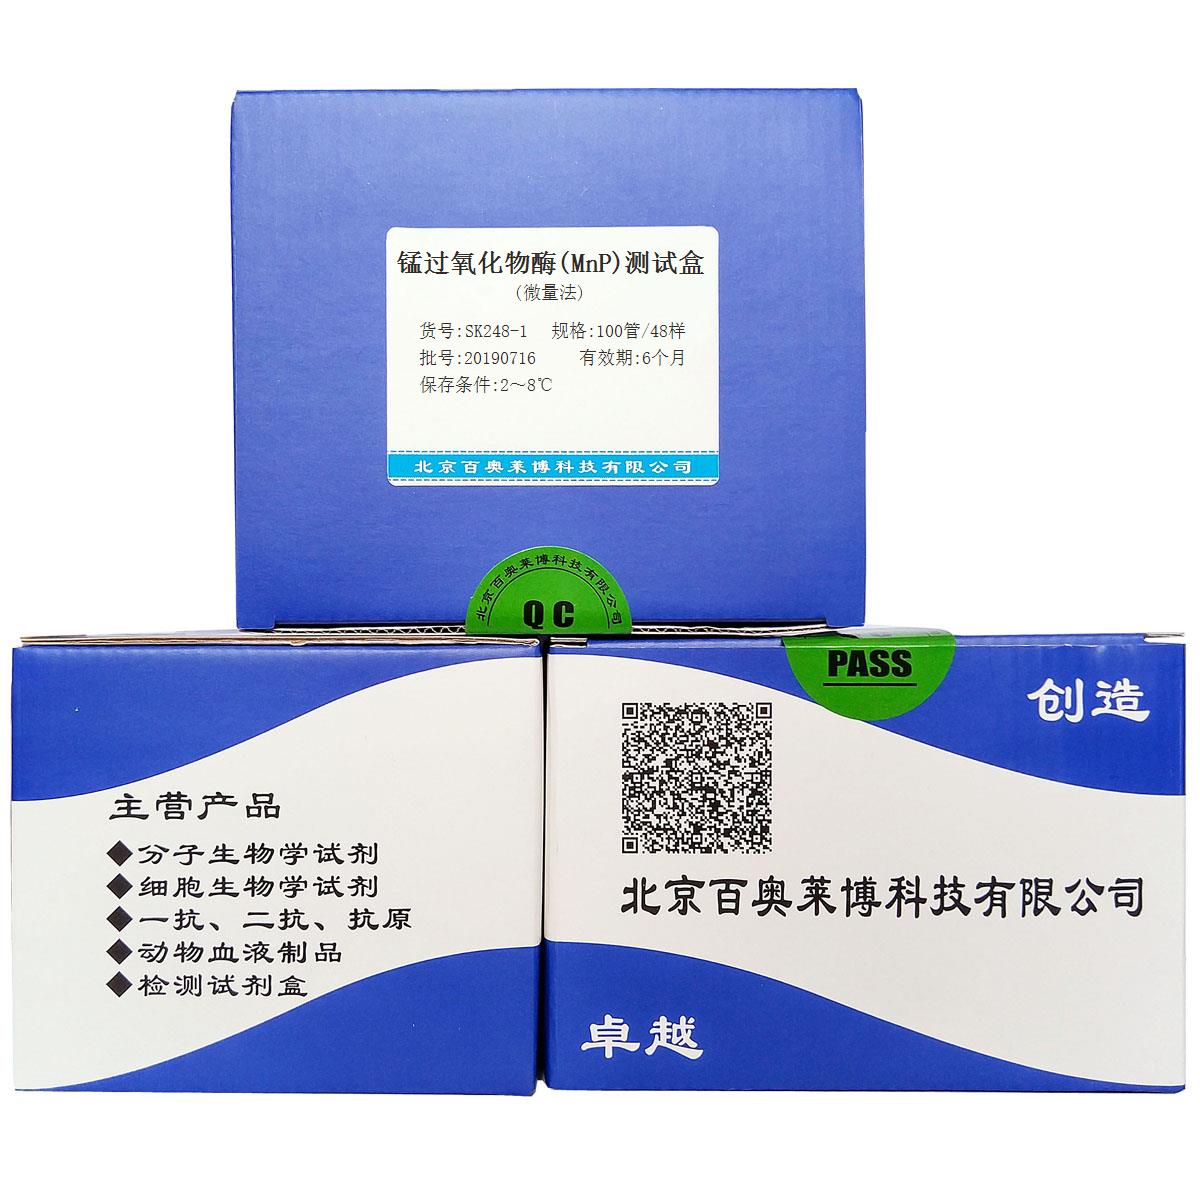 锰过氧化物酶(MnP)测试盒(微量法)北京价格